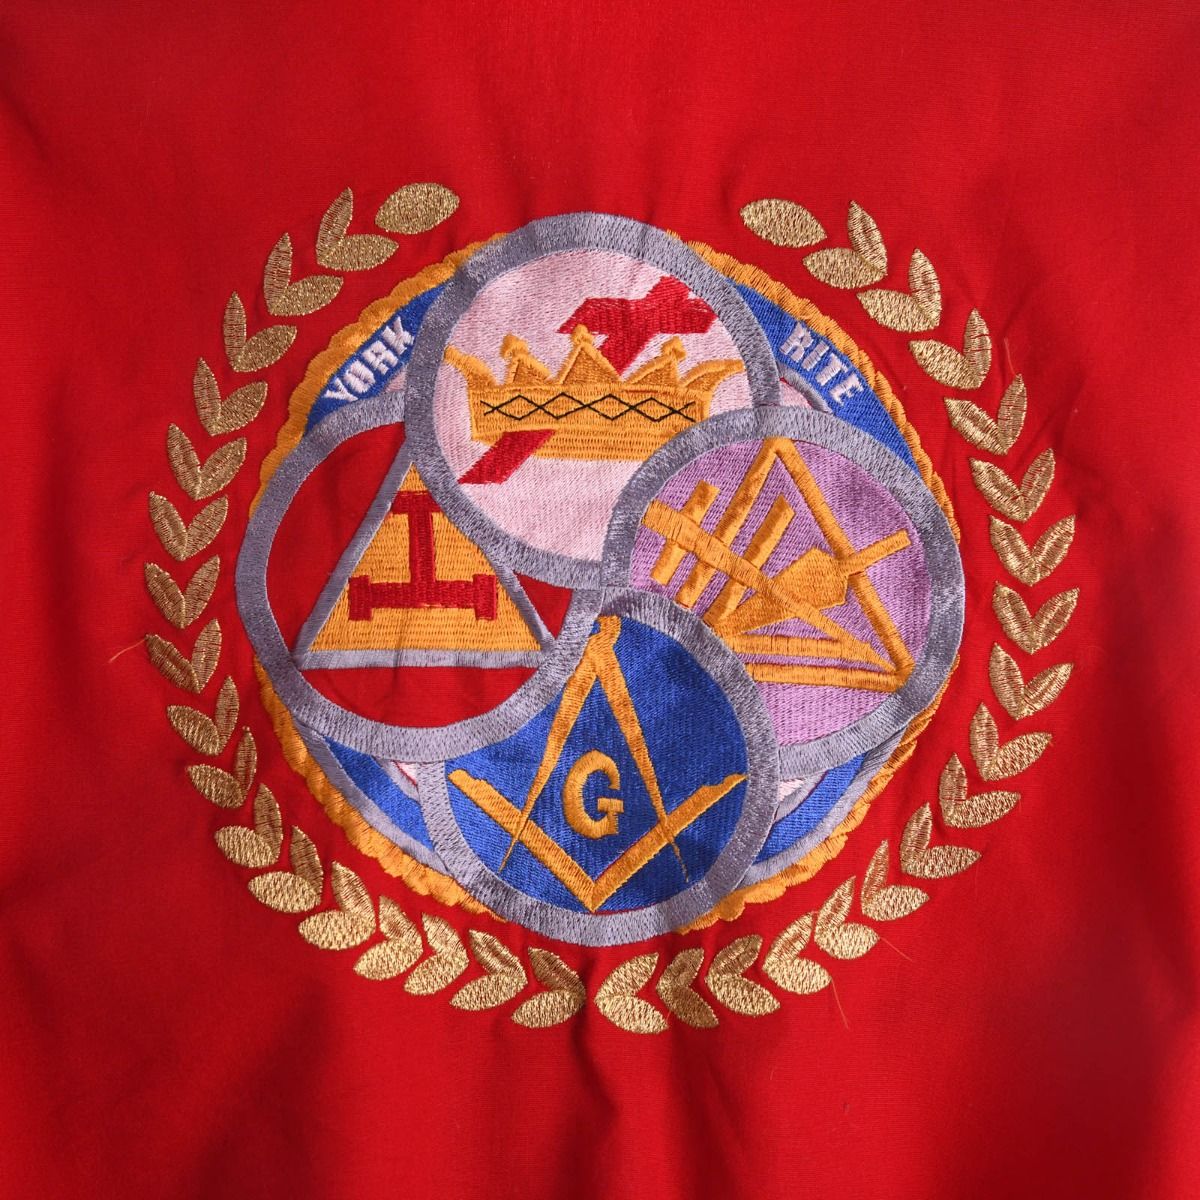 Santa Monica Bay Royal Arch Chapter No. 97 Masonic Jacket